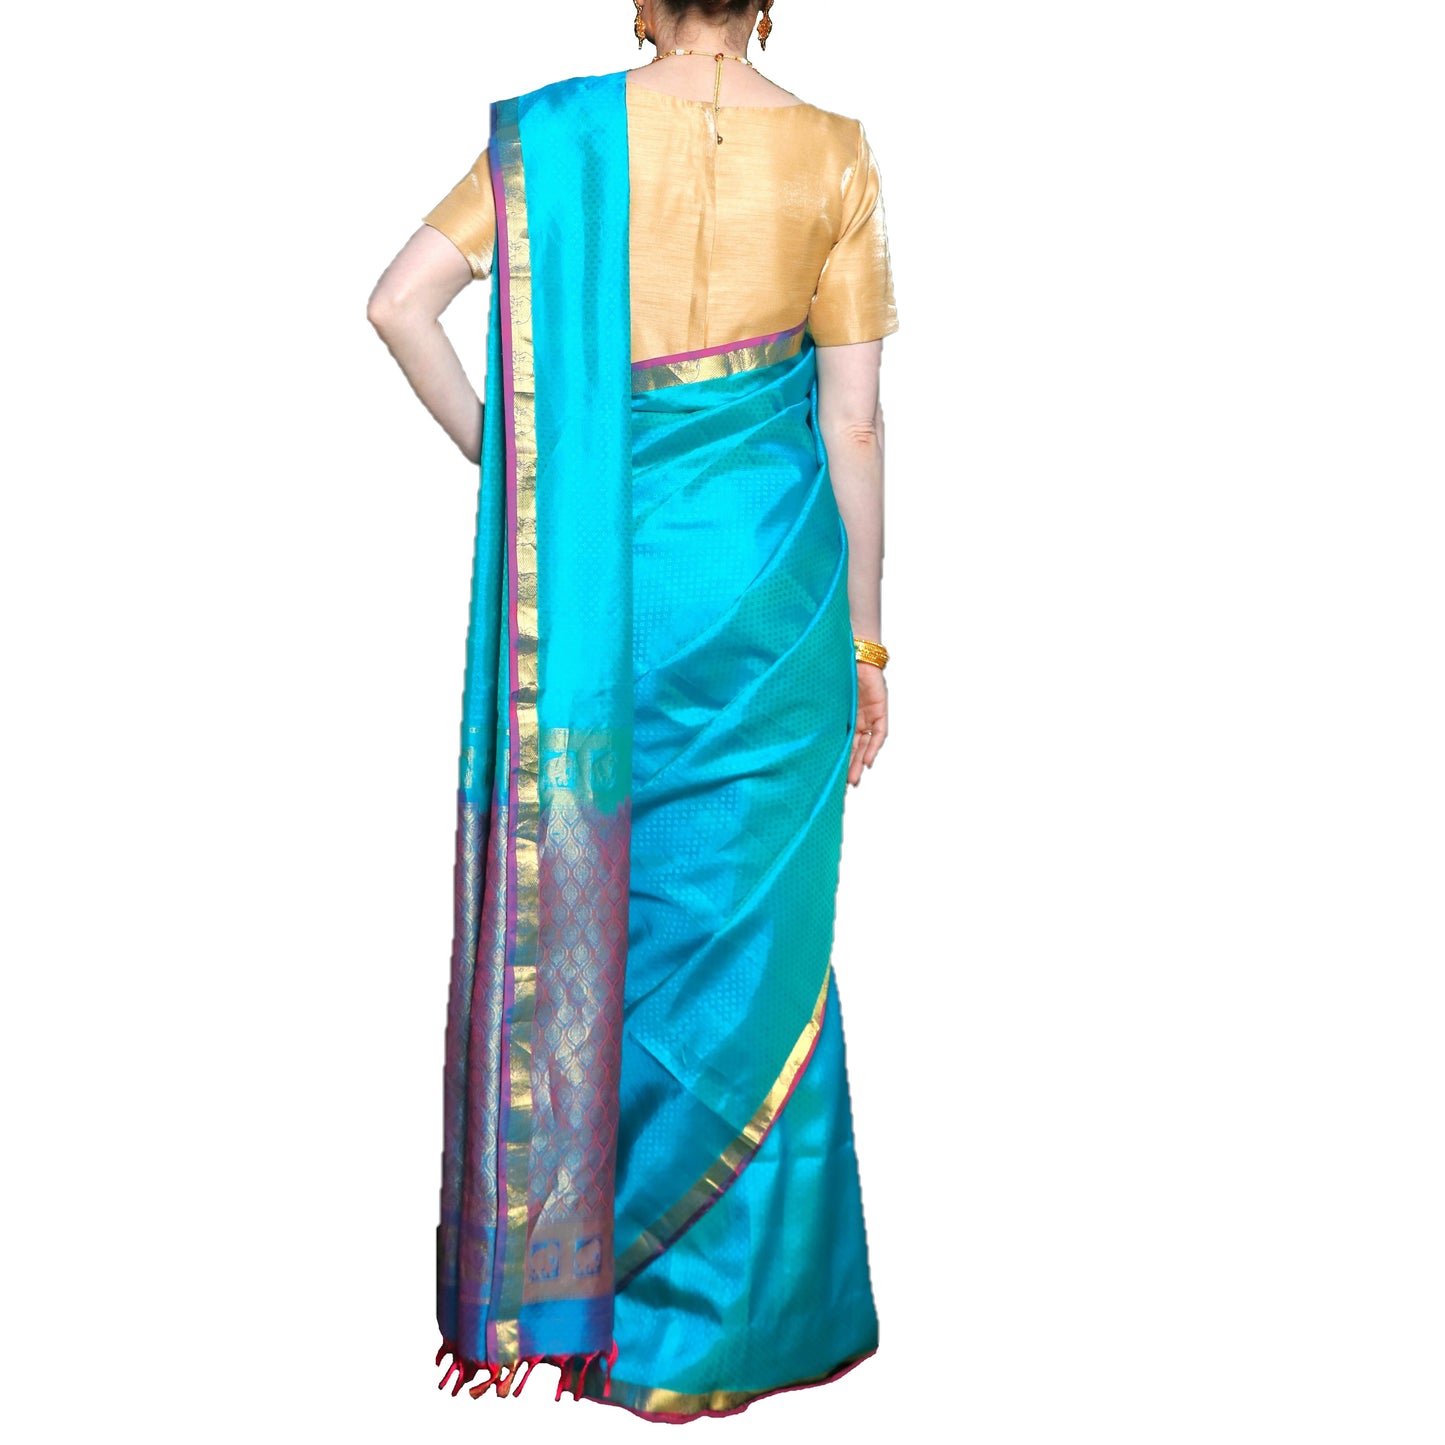 Maharani's Pure Handloom Kanjivaram Silk Saree - Sky Blue with Purple Zari Border and Pallu